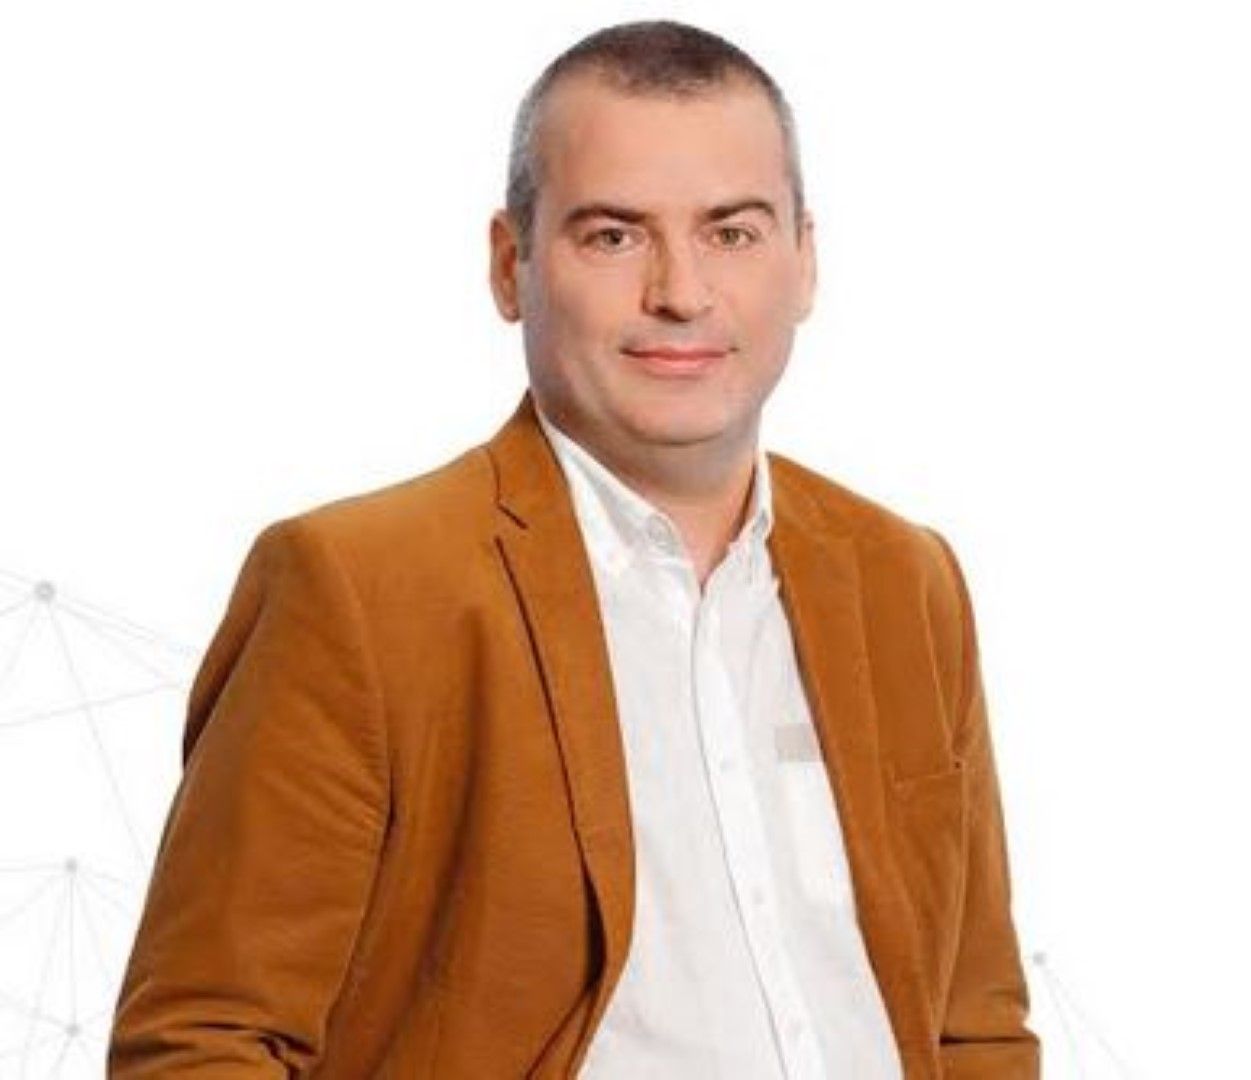 Хинко Хинев се присъединява към TBI Bank като ръководител отдел "Бизнес банкиране" за България